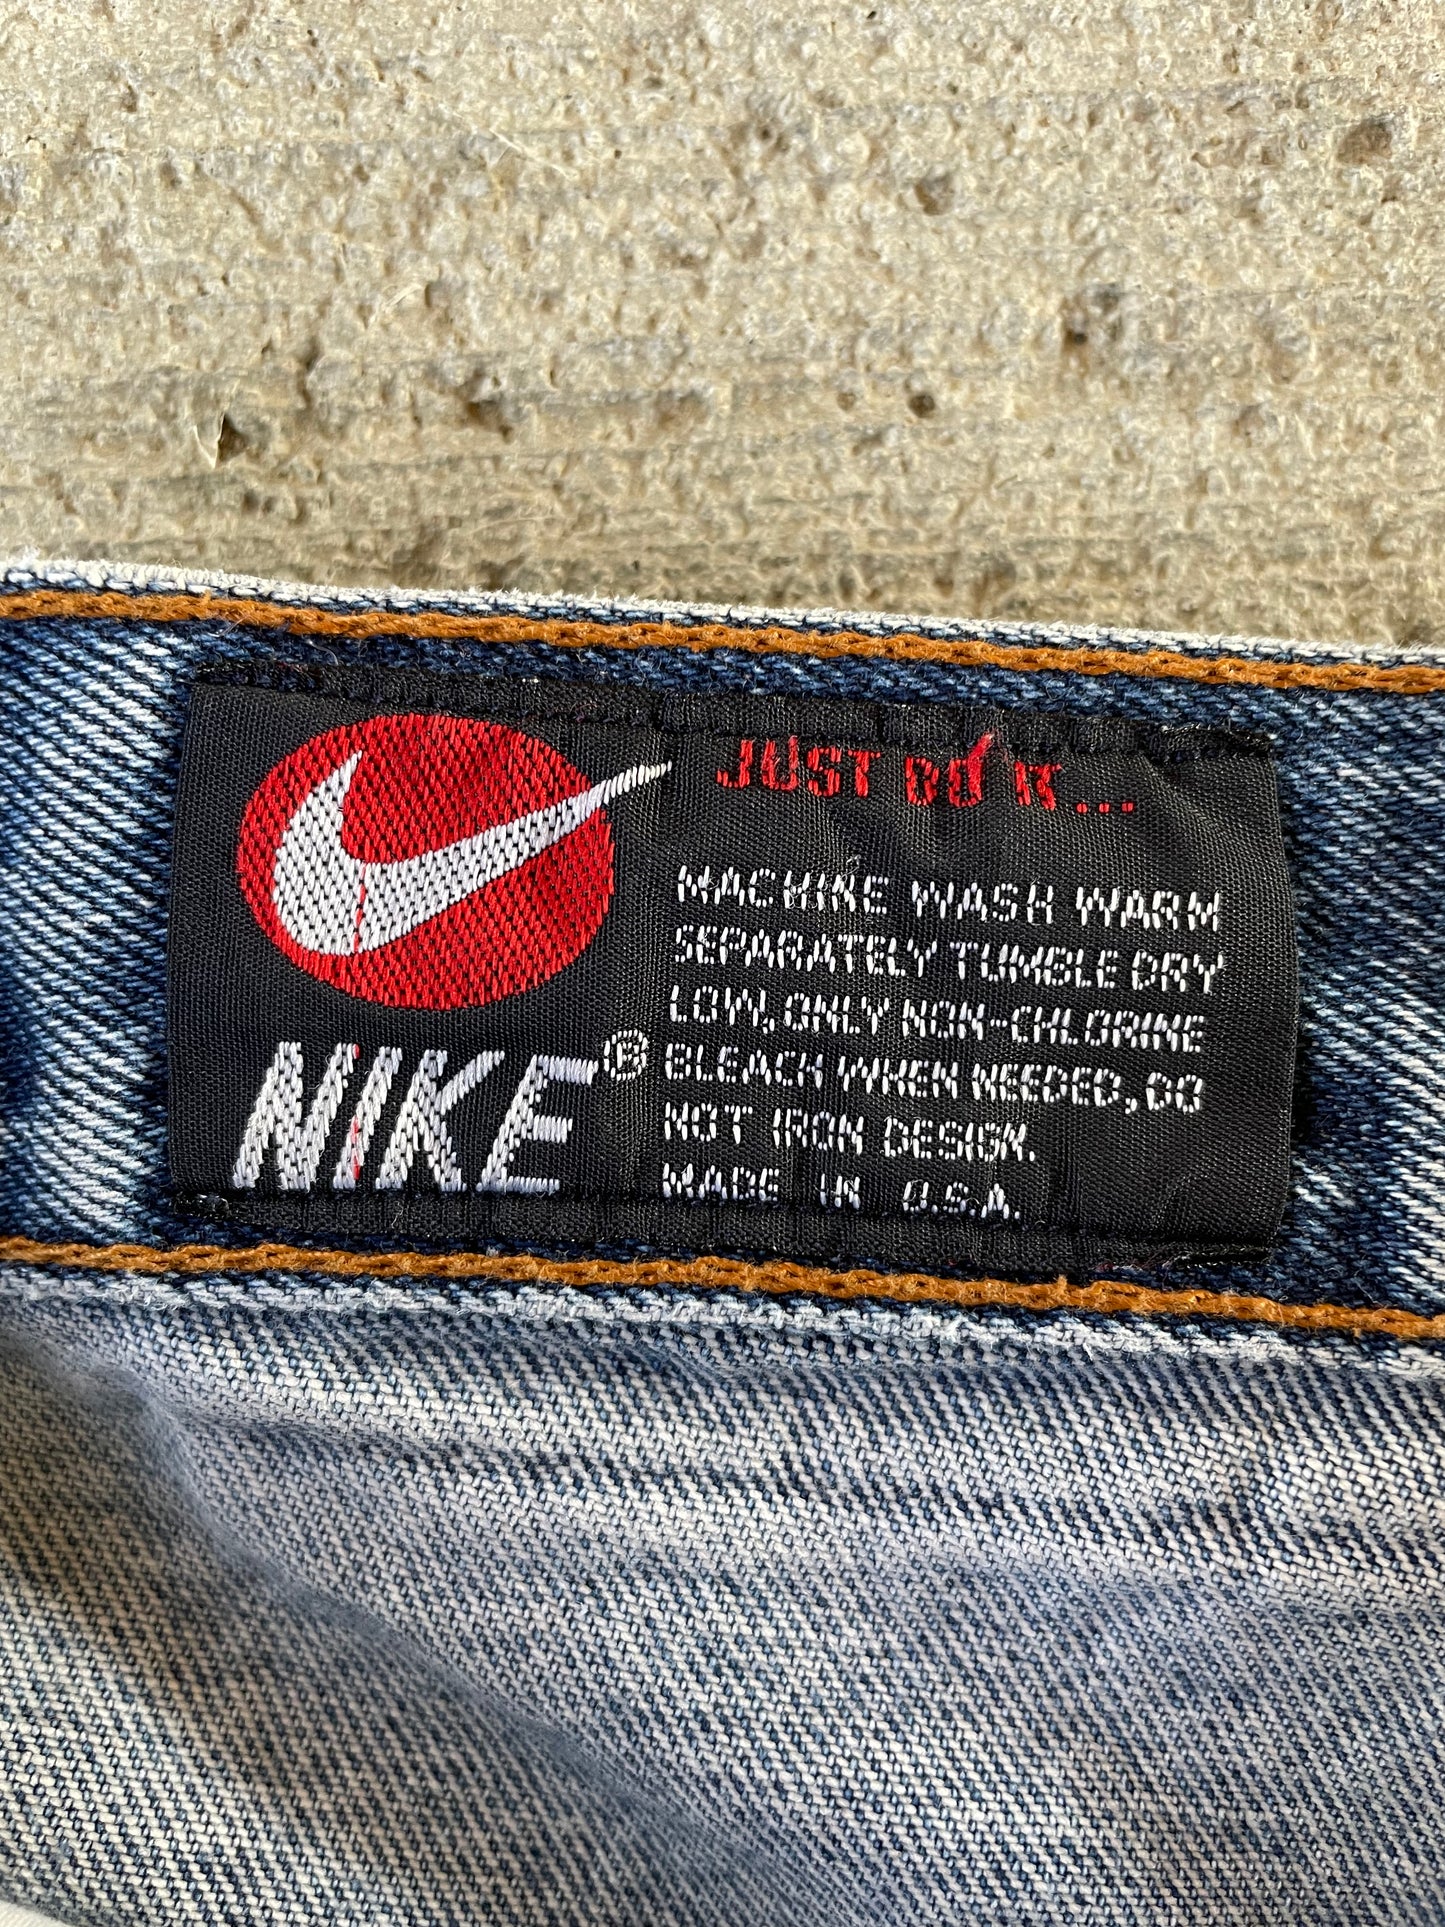 1990s Nike Air Denim Jeans